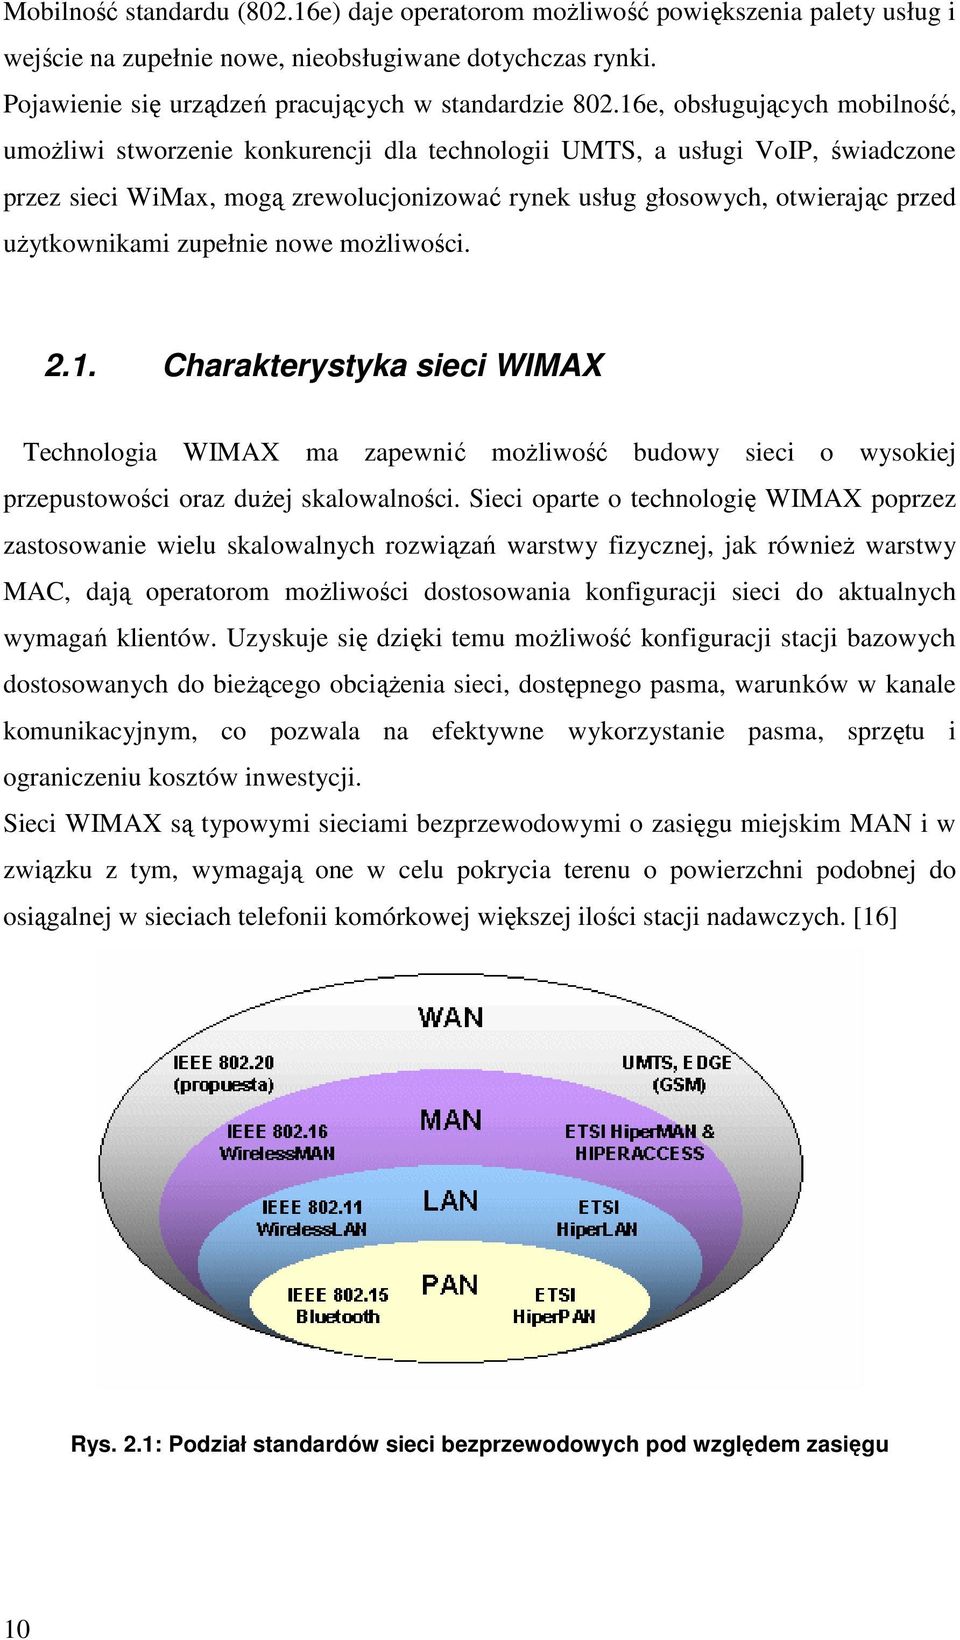 uŝytkownikami zupełnie nowe moŝliwości. 2.1. Charakterystyka sieci WIMAX Technologia WIMAX ma zapewnić moŝliwość budowy sieci o wysokiej przepustowości oraz duŝej skalowalności.